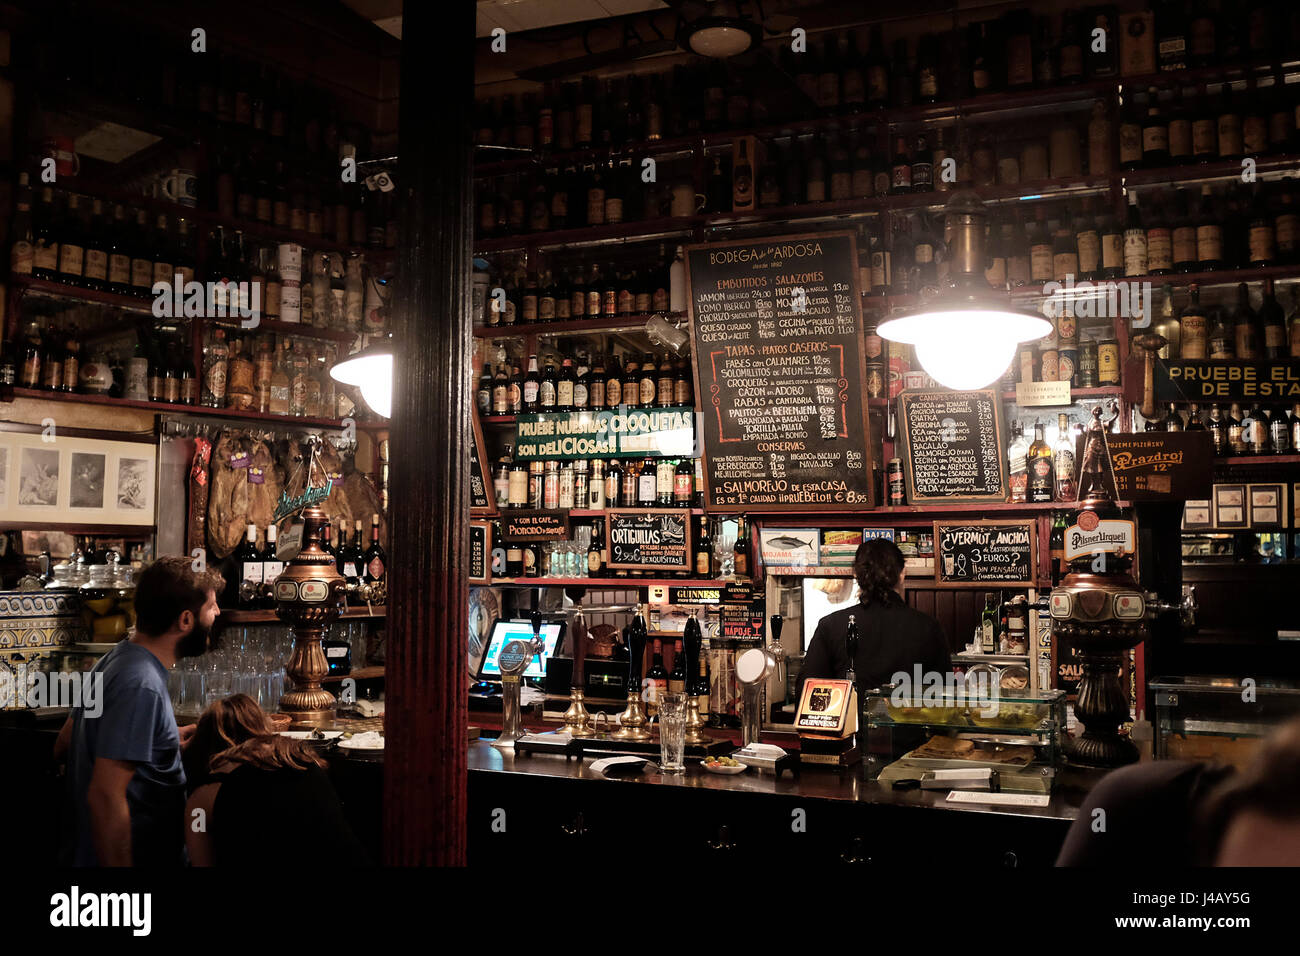 Bodega de la Ardosa. Bar. Madrid, Spain Stock Photo - Alamy